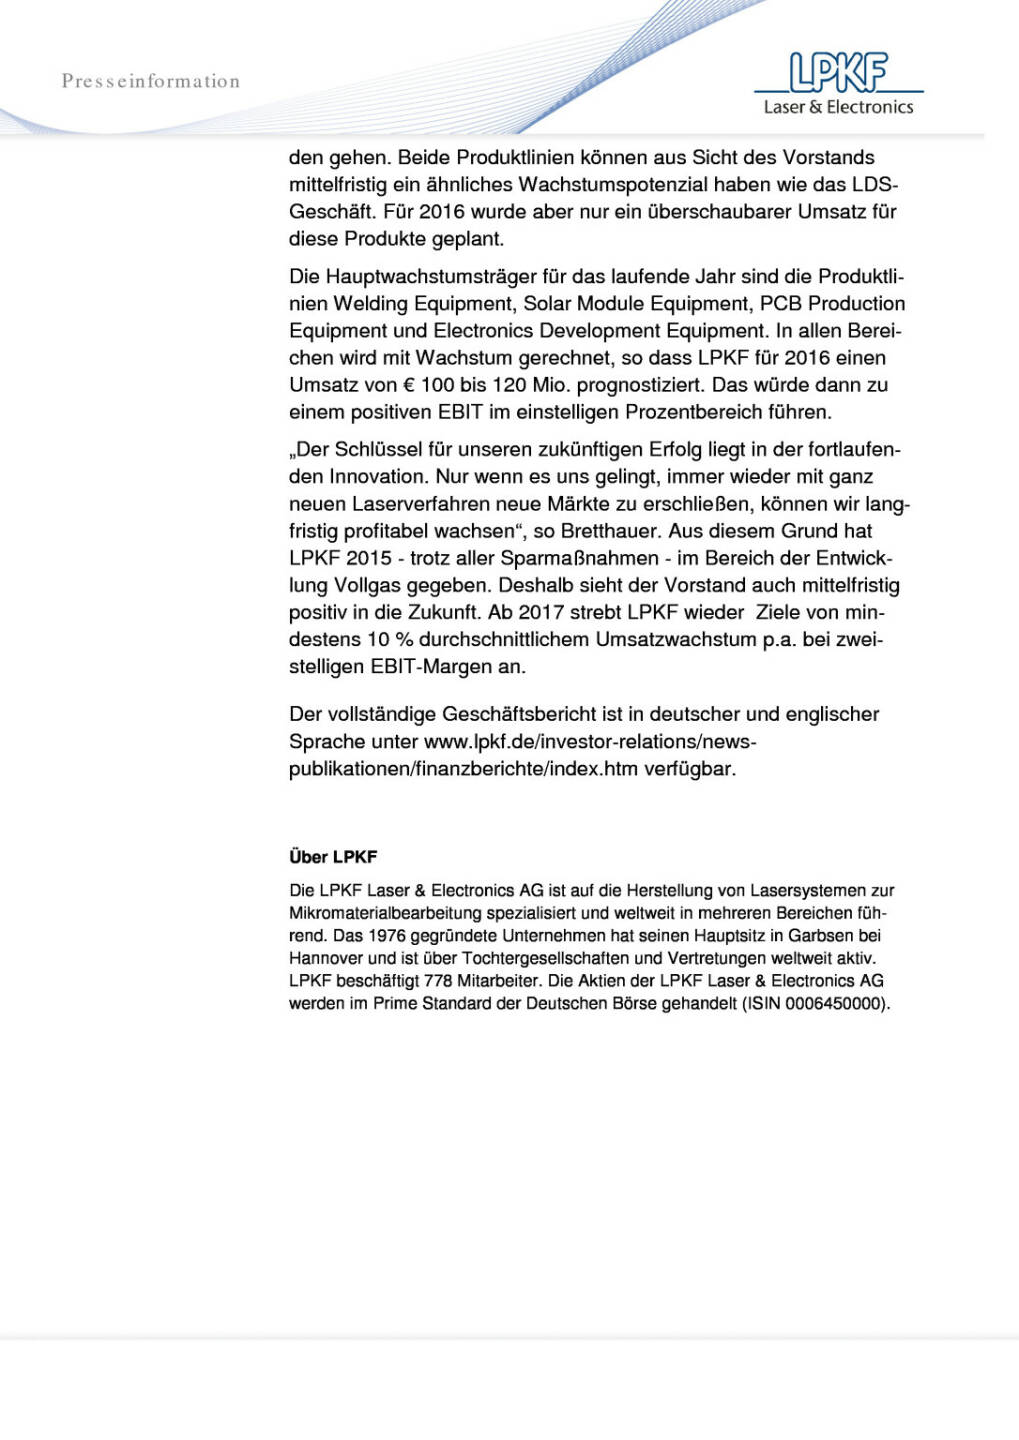 LPKF: Schwaches LDS-Geschäft belastet die Geschäftsentwicklung 2015, Seite 2/2, komplettes Dokument unter http://boerse-social.com/static/uploads/file_811_lpkf_schwaches_lds-geschaft_belastet_die_geschaftsentwicklung_2015.pdf